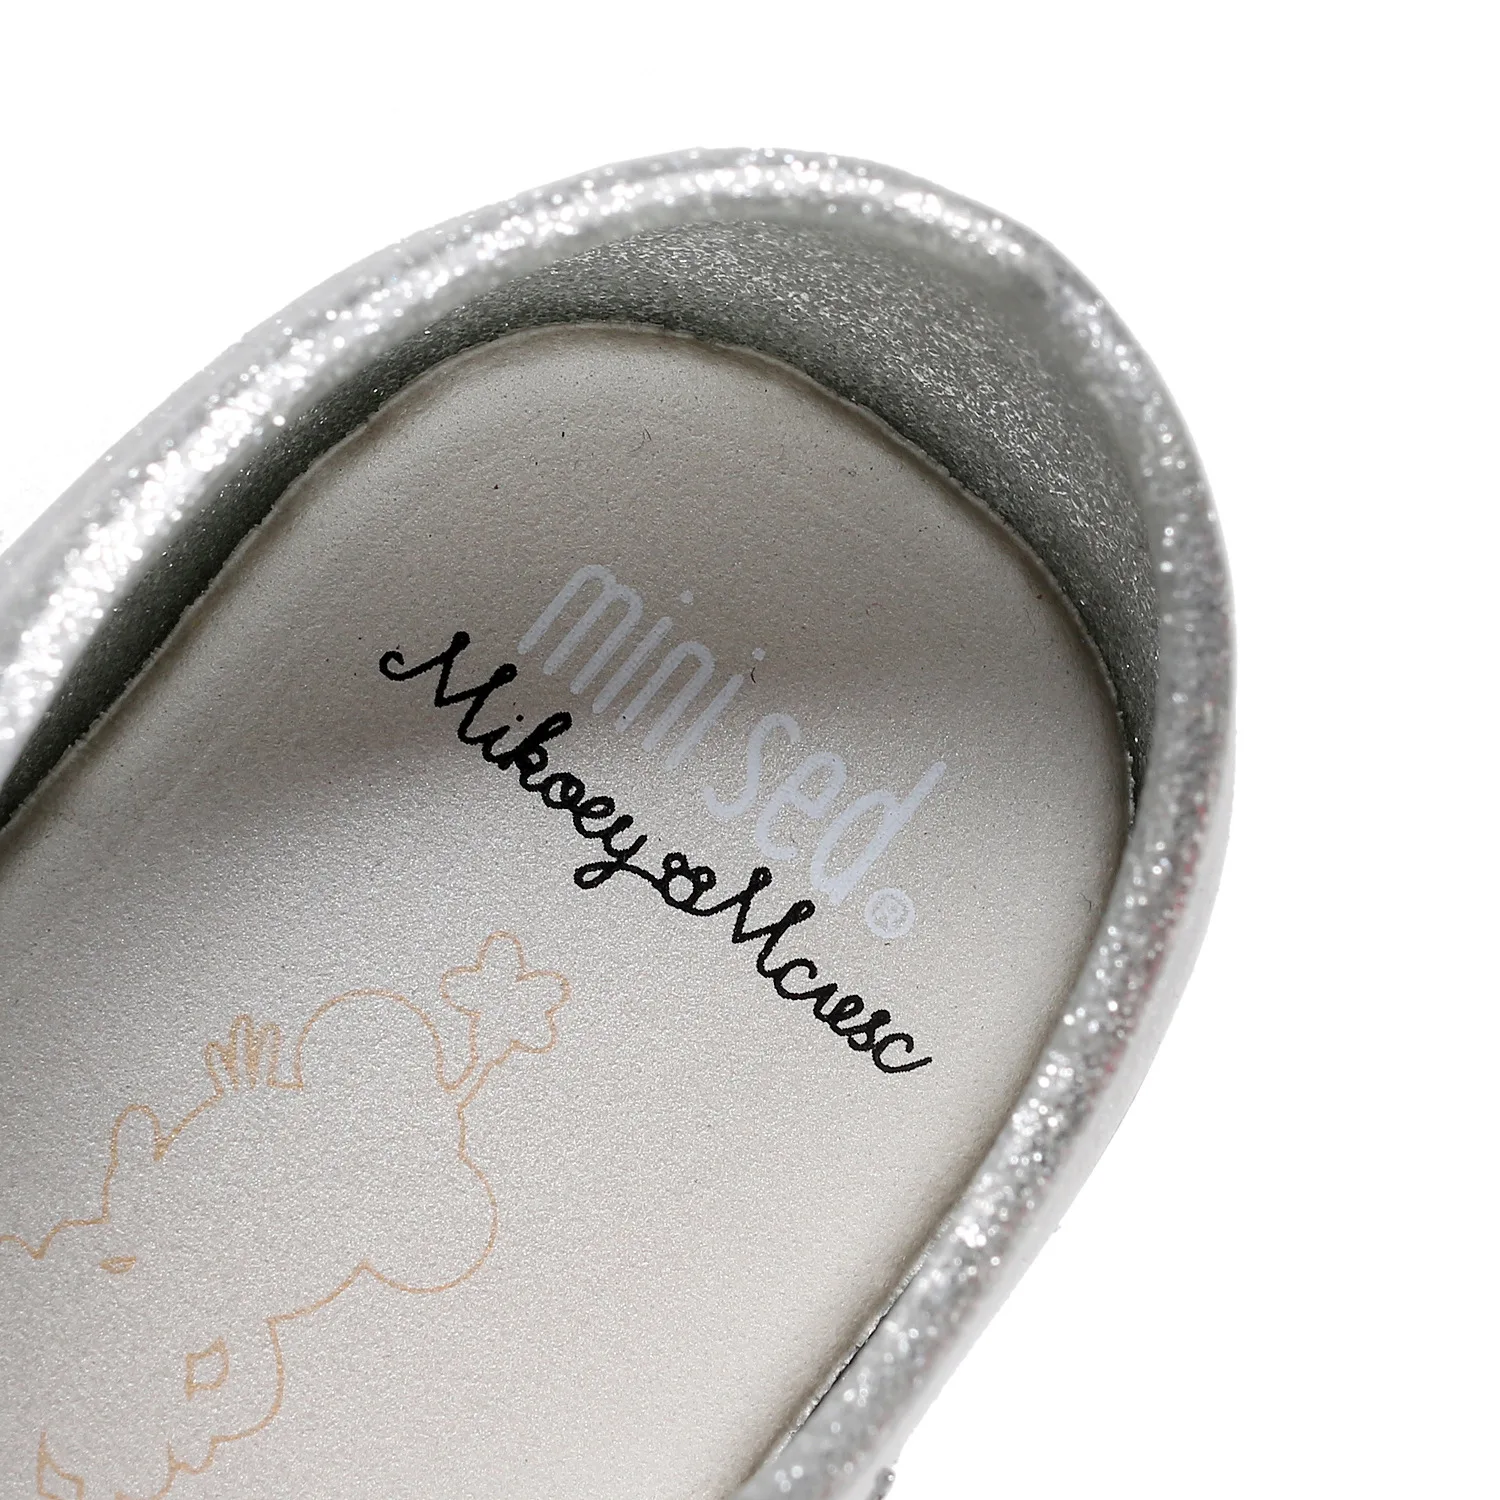 Обувь для детей сандалии для девочек прозрачная обувь осень детская мягкая комфорт дождь Обувь дети Сандалии для девочек Карамельный цвет